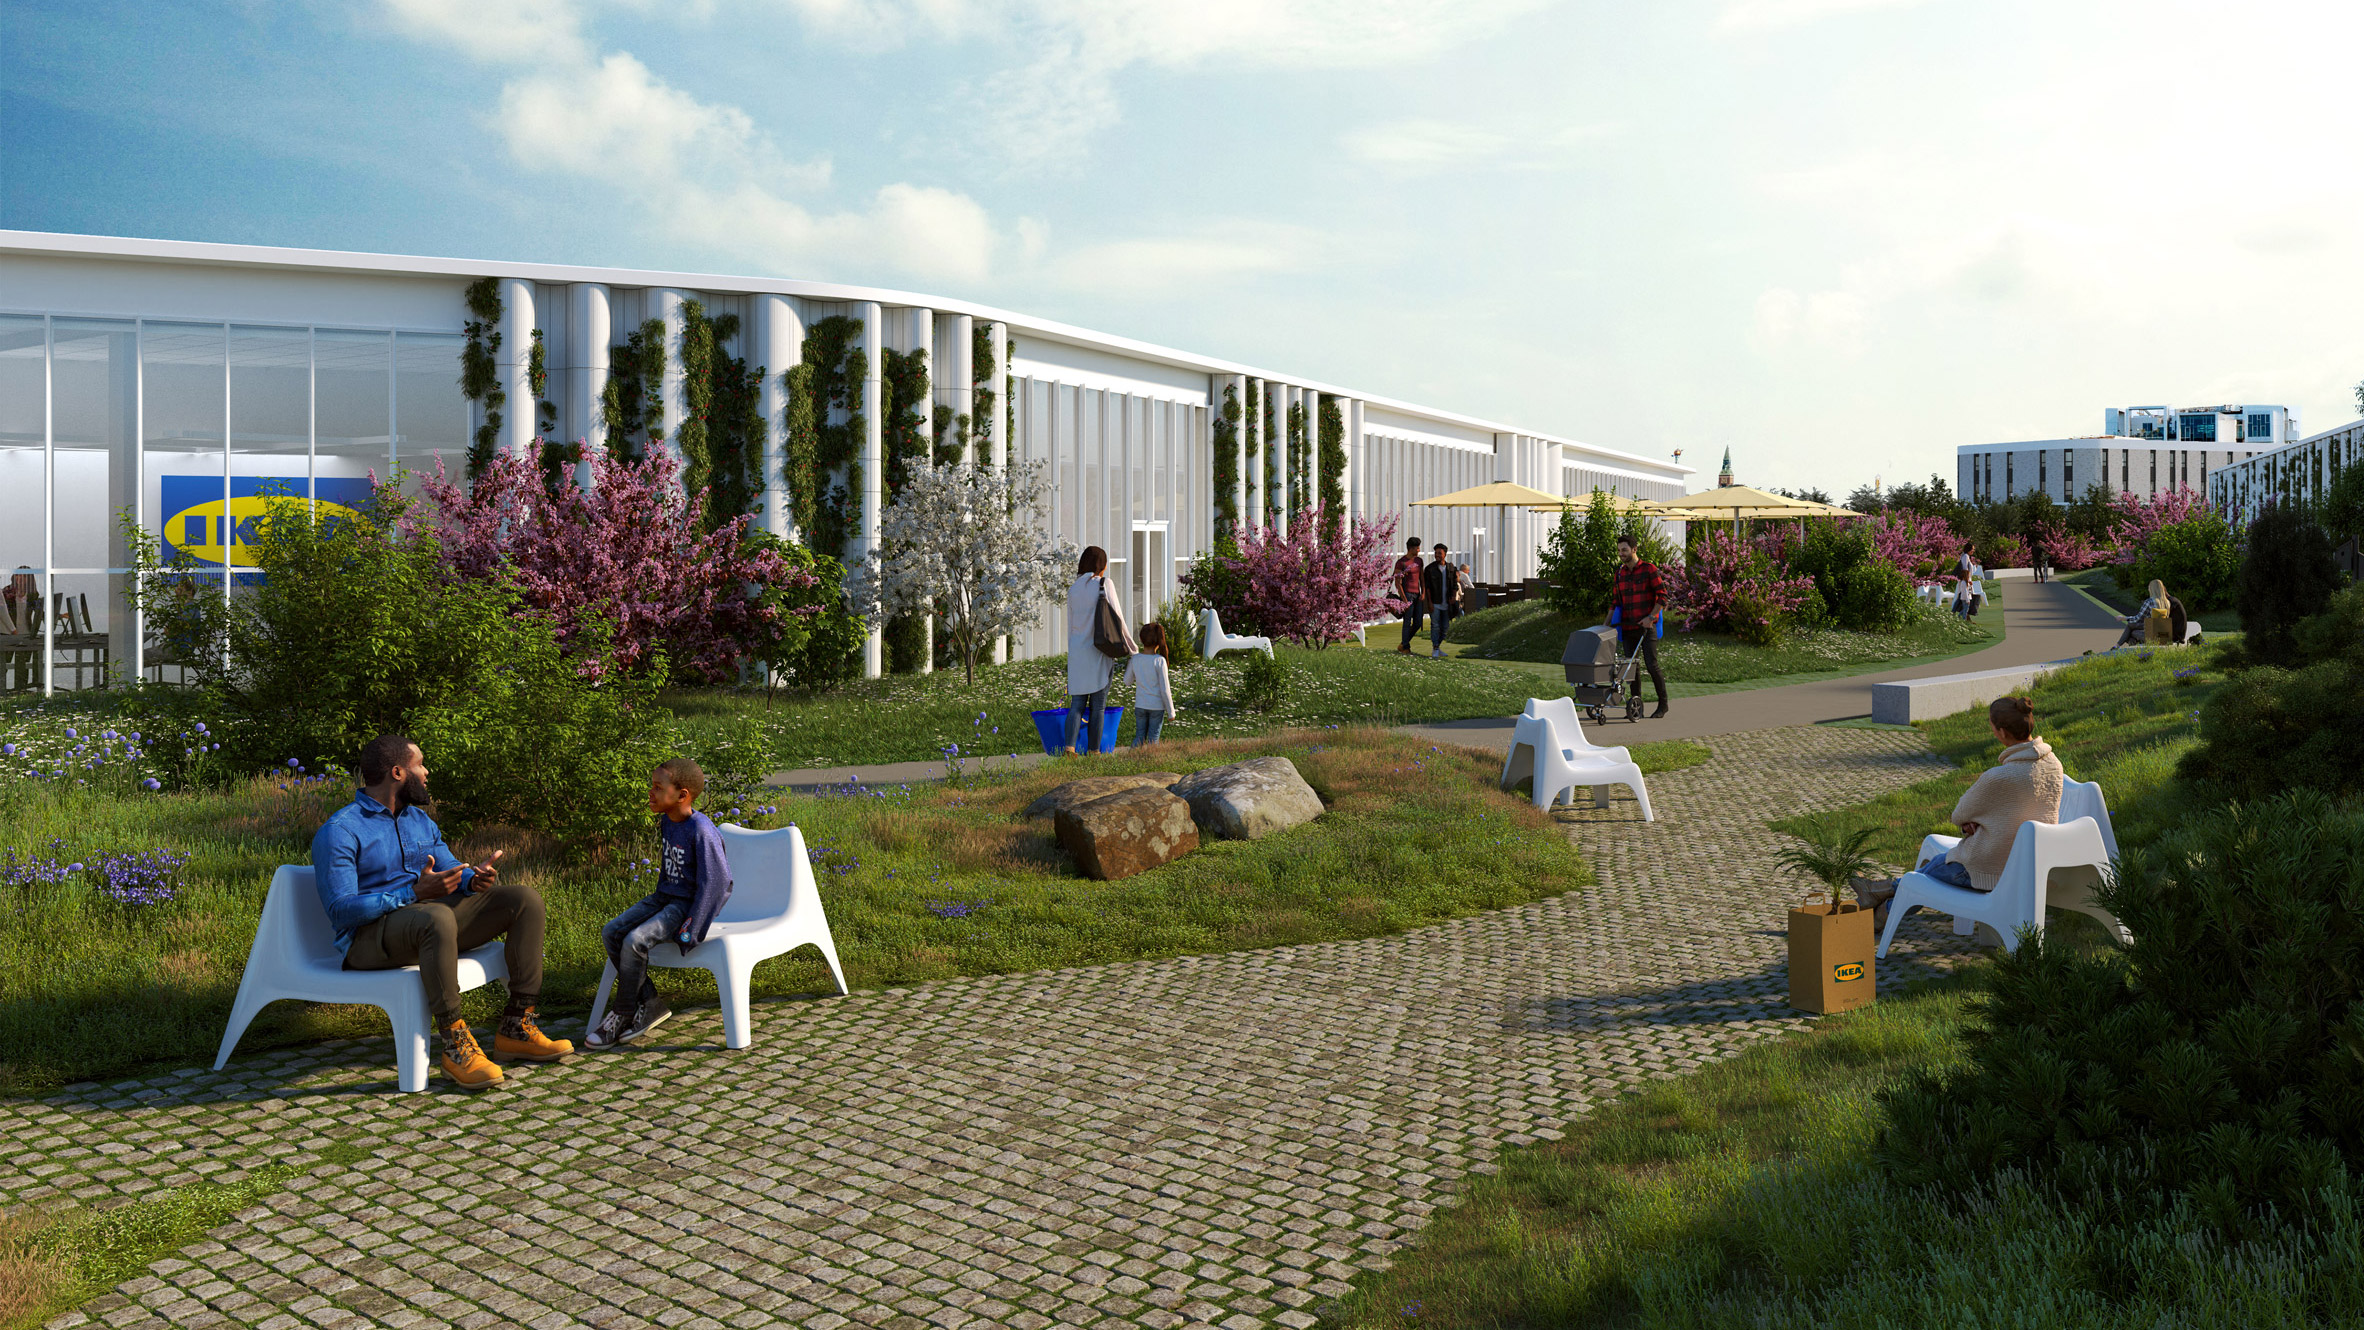 Dorte Mandrup designs IKEA Copenhagen store with rooftop park